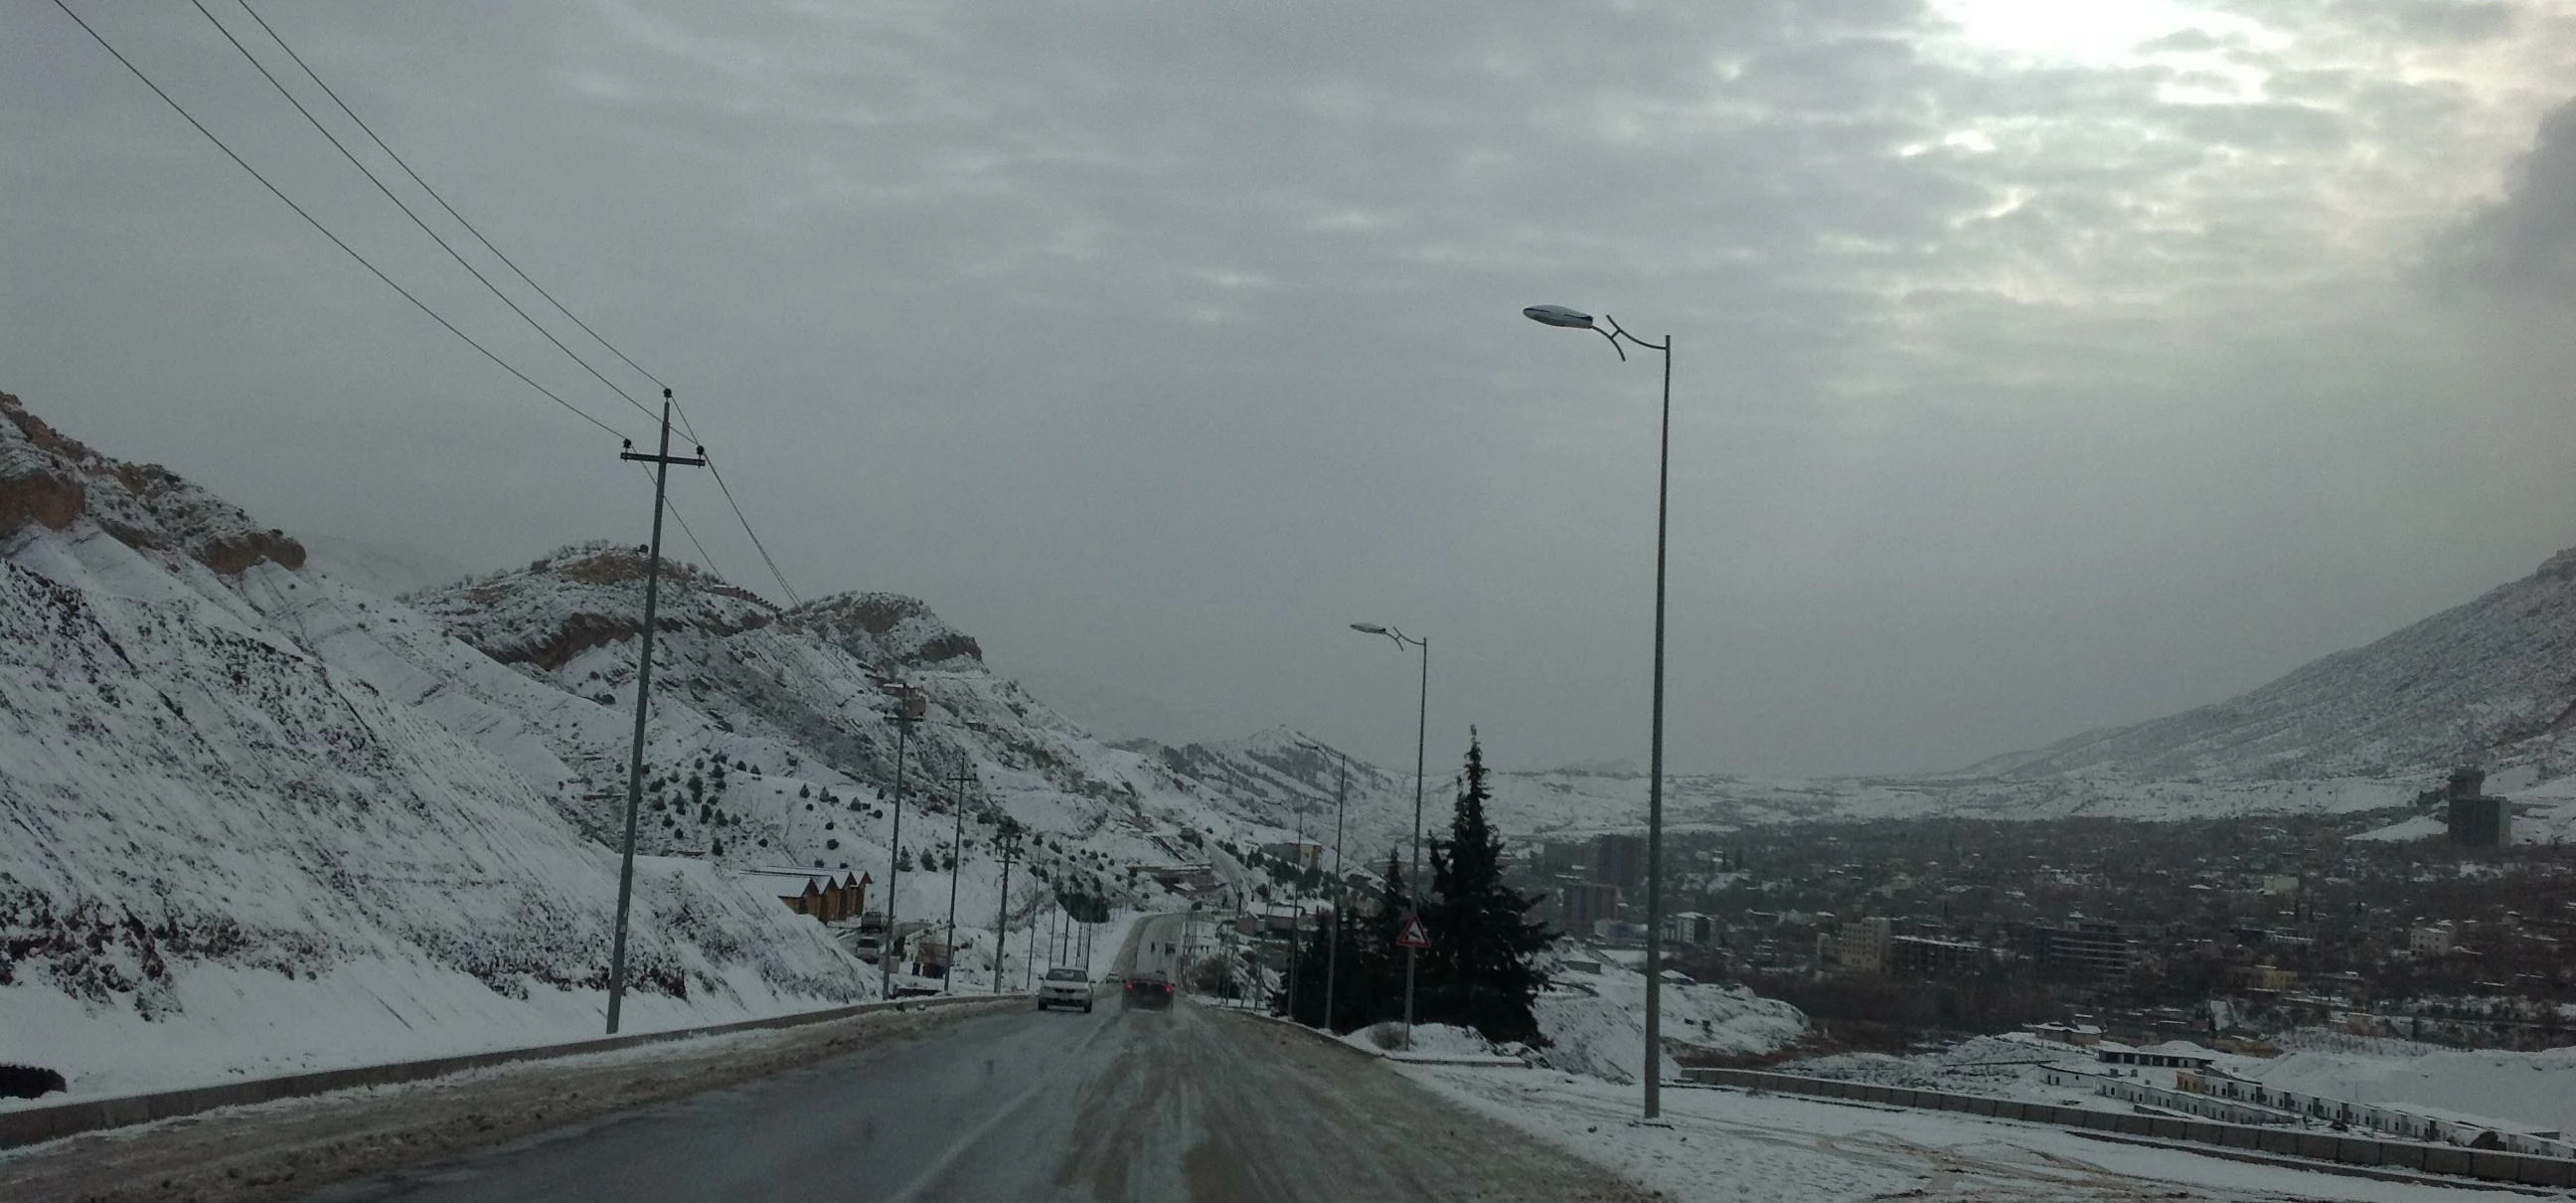 Snowing #erbil